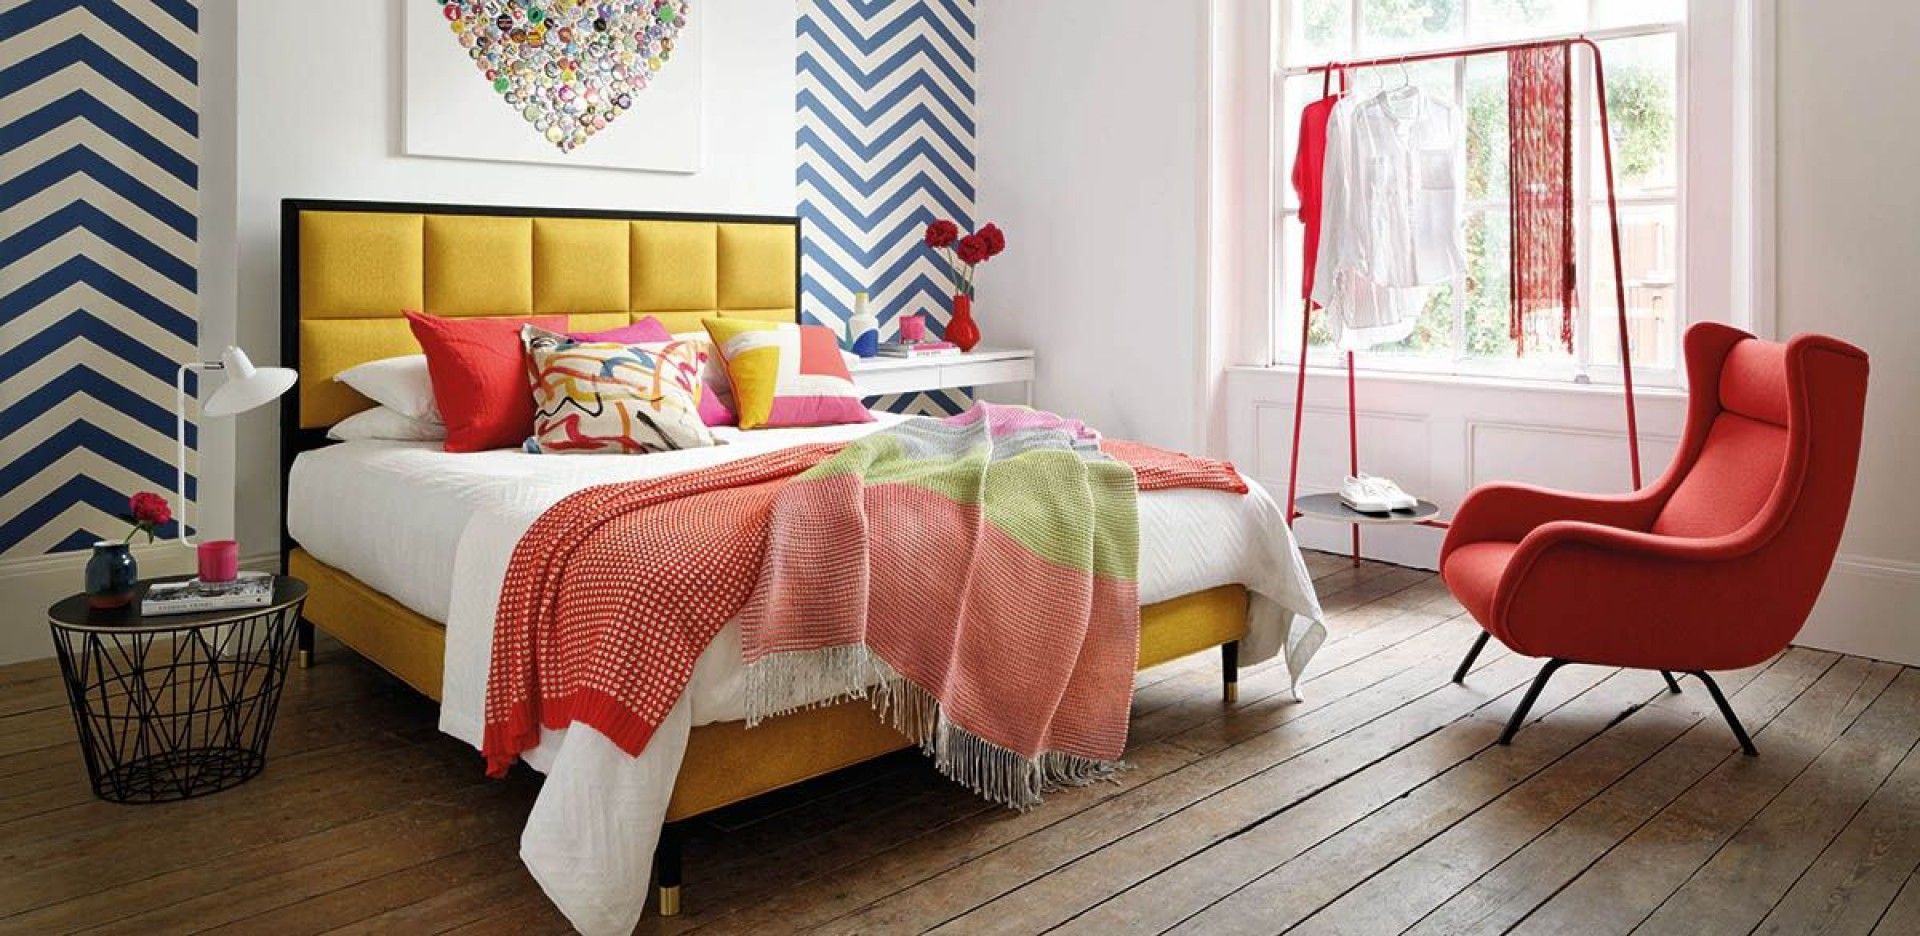 Kolorowy fotel będzie w sypialni ciekawym elementem dekoracyjnym. Fot. Hypnos Beds